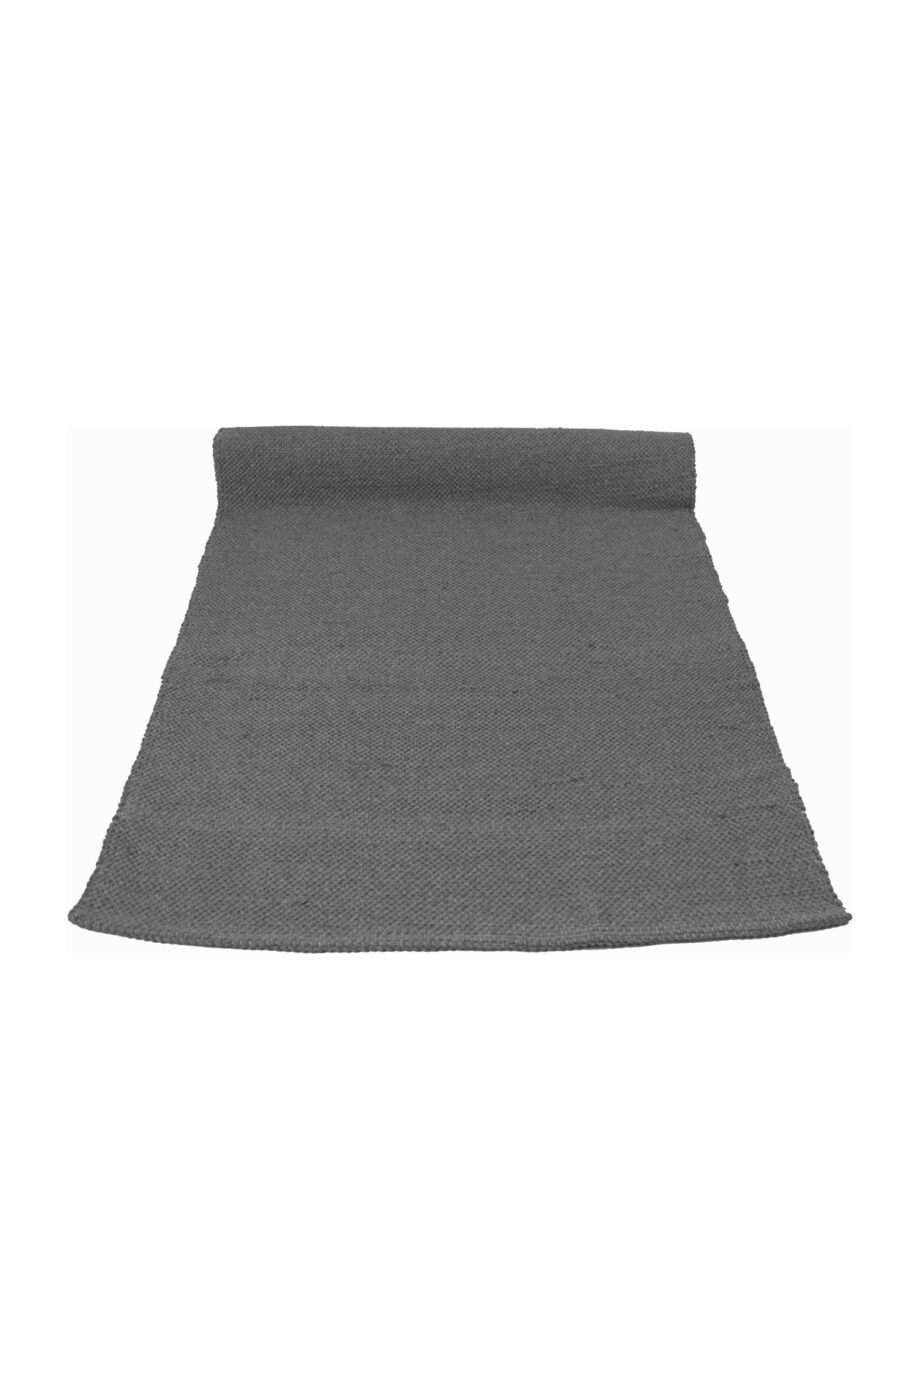 plan-b-rug nordic grey medium